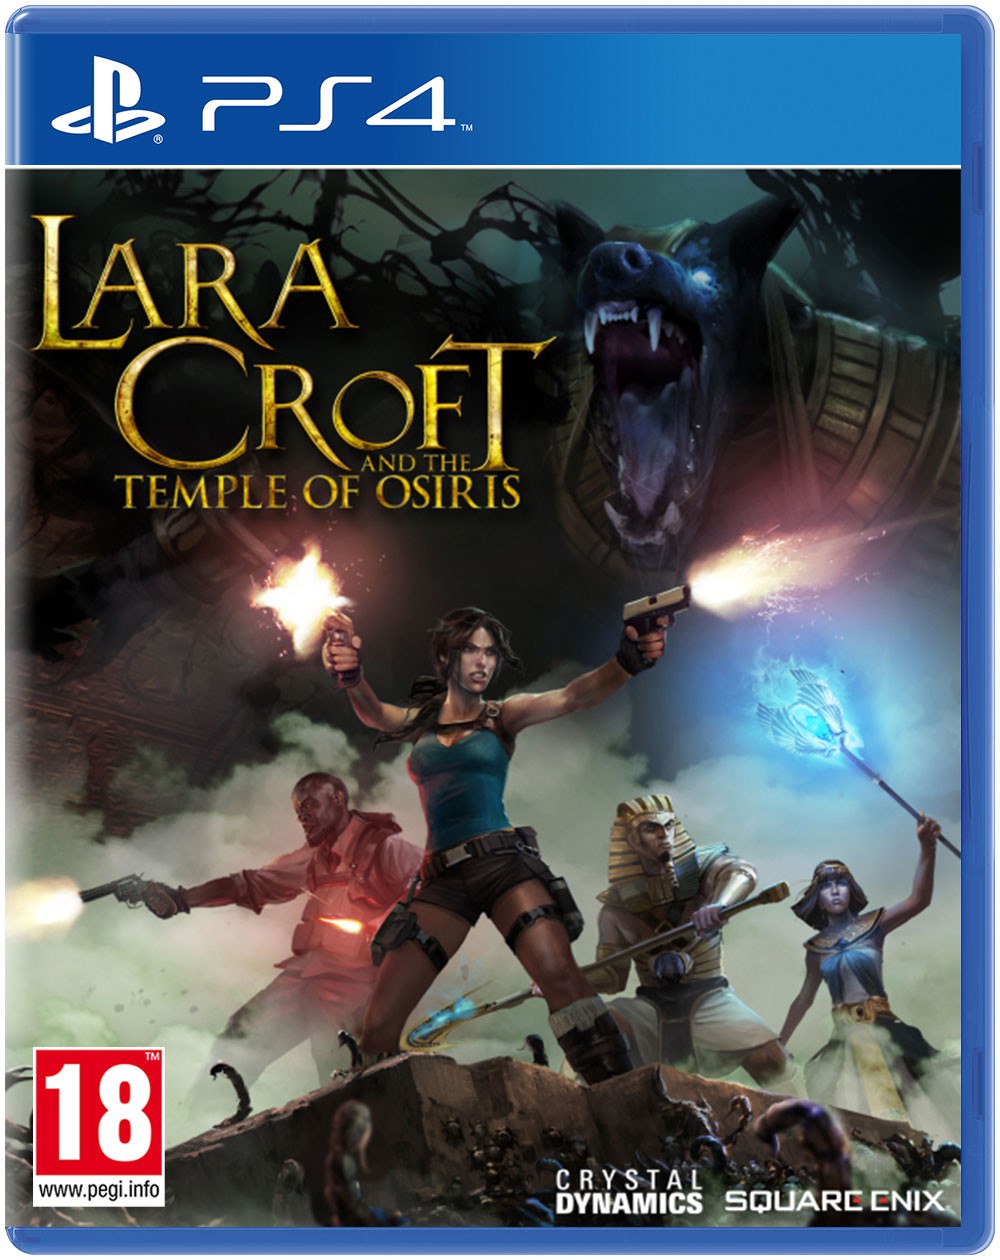 ¿Cual es tu último juego completado? V.2 - Página 19 Lara-croft-and-the-temple-of-osiris-ps4